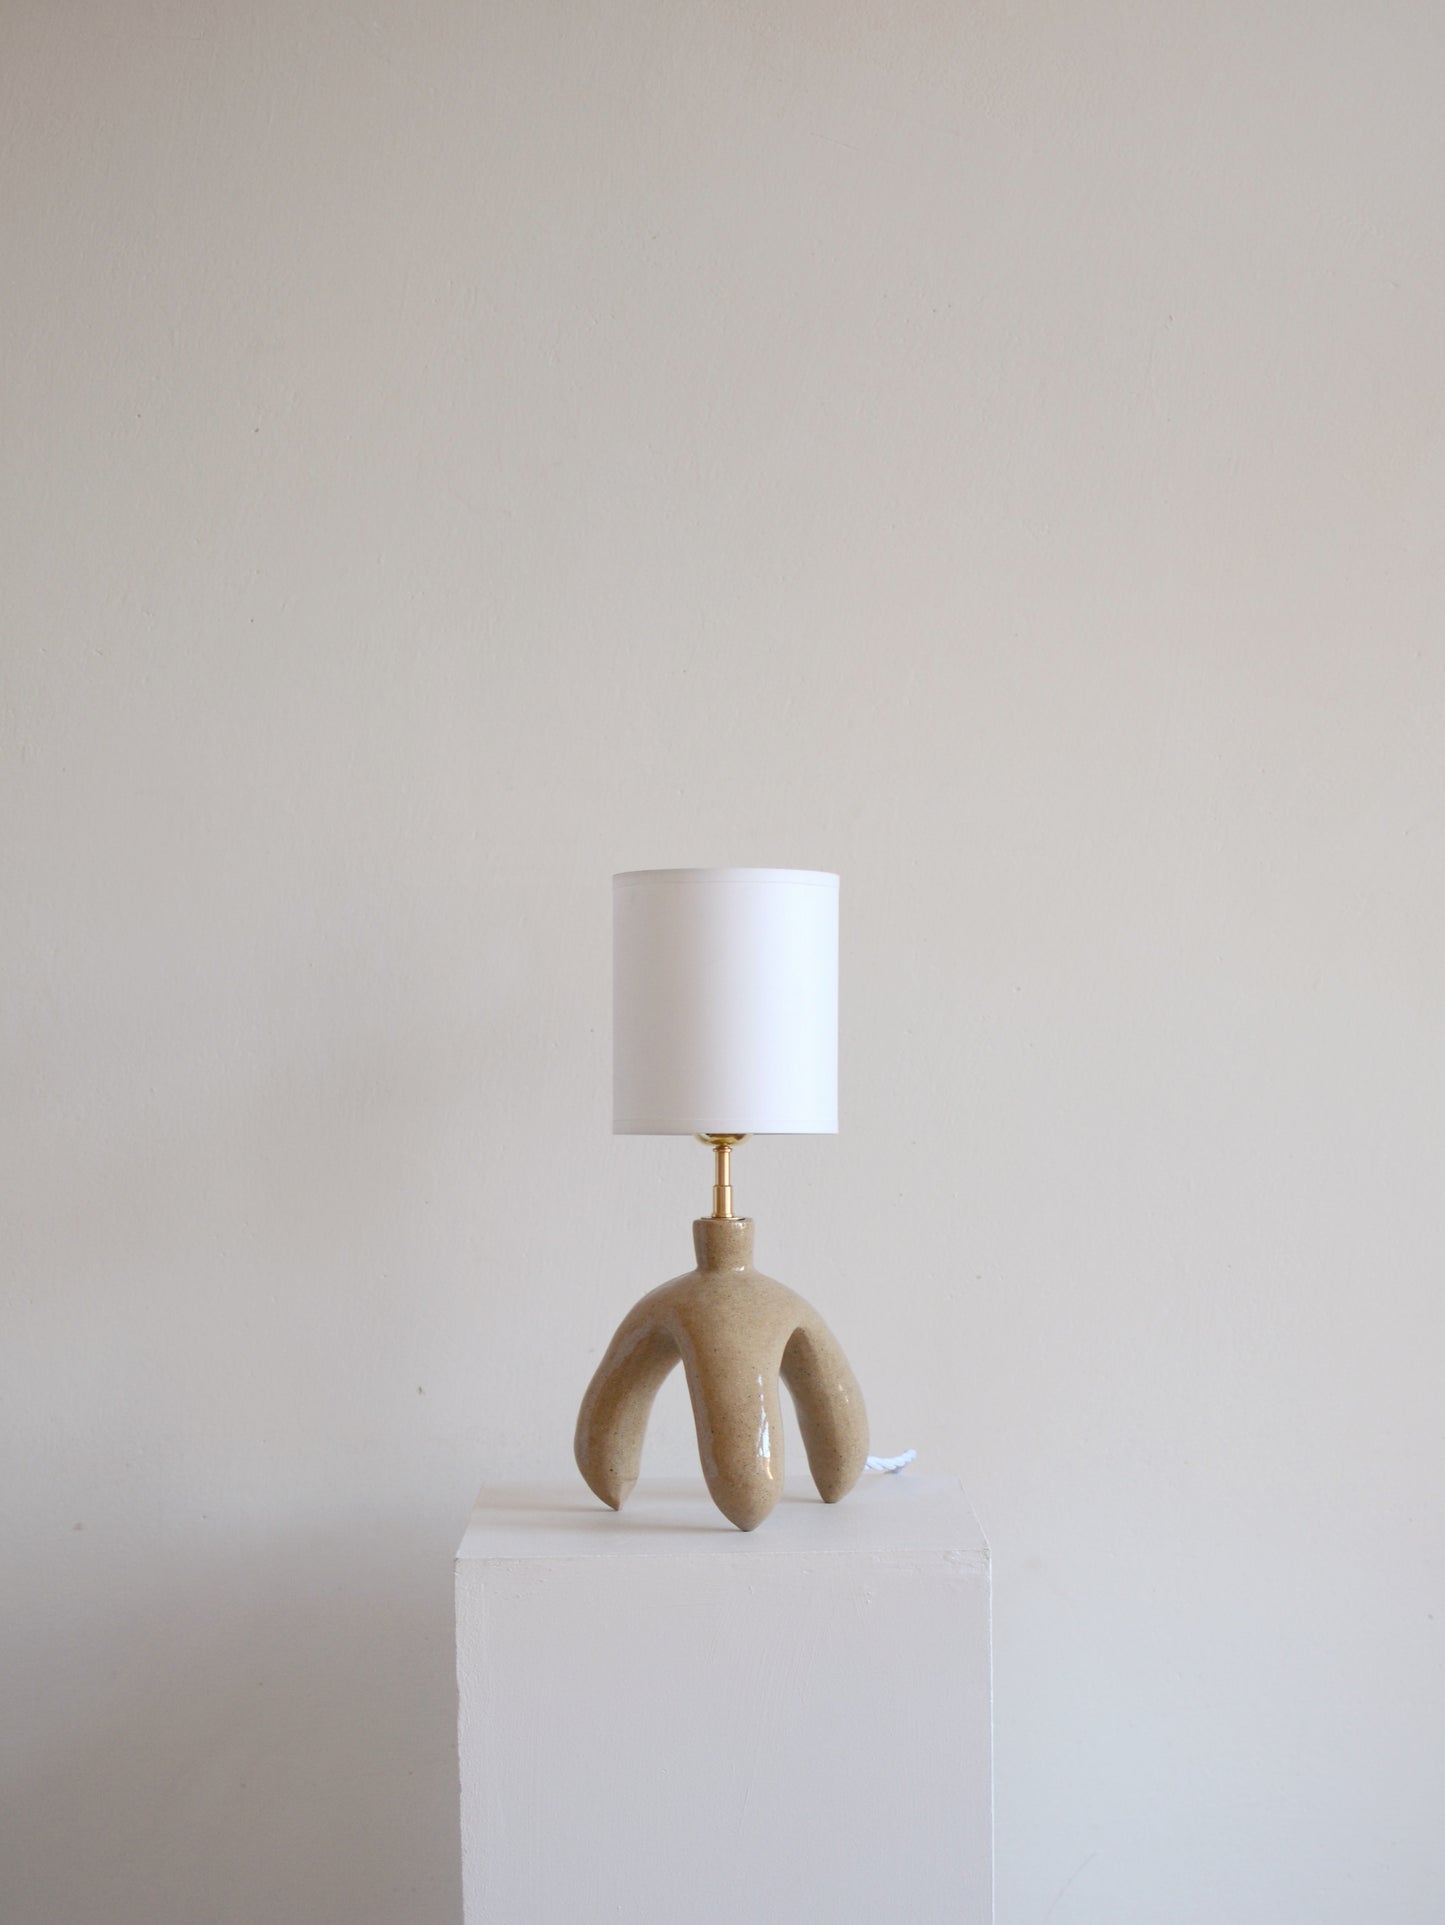 Nº13 - Ceramic lamp